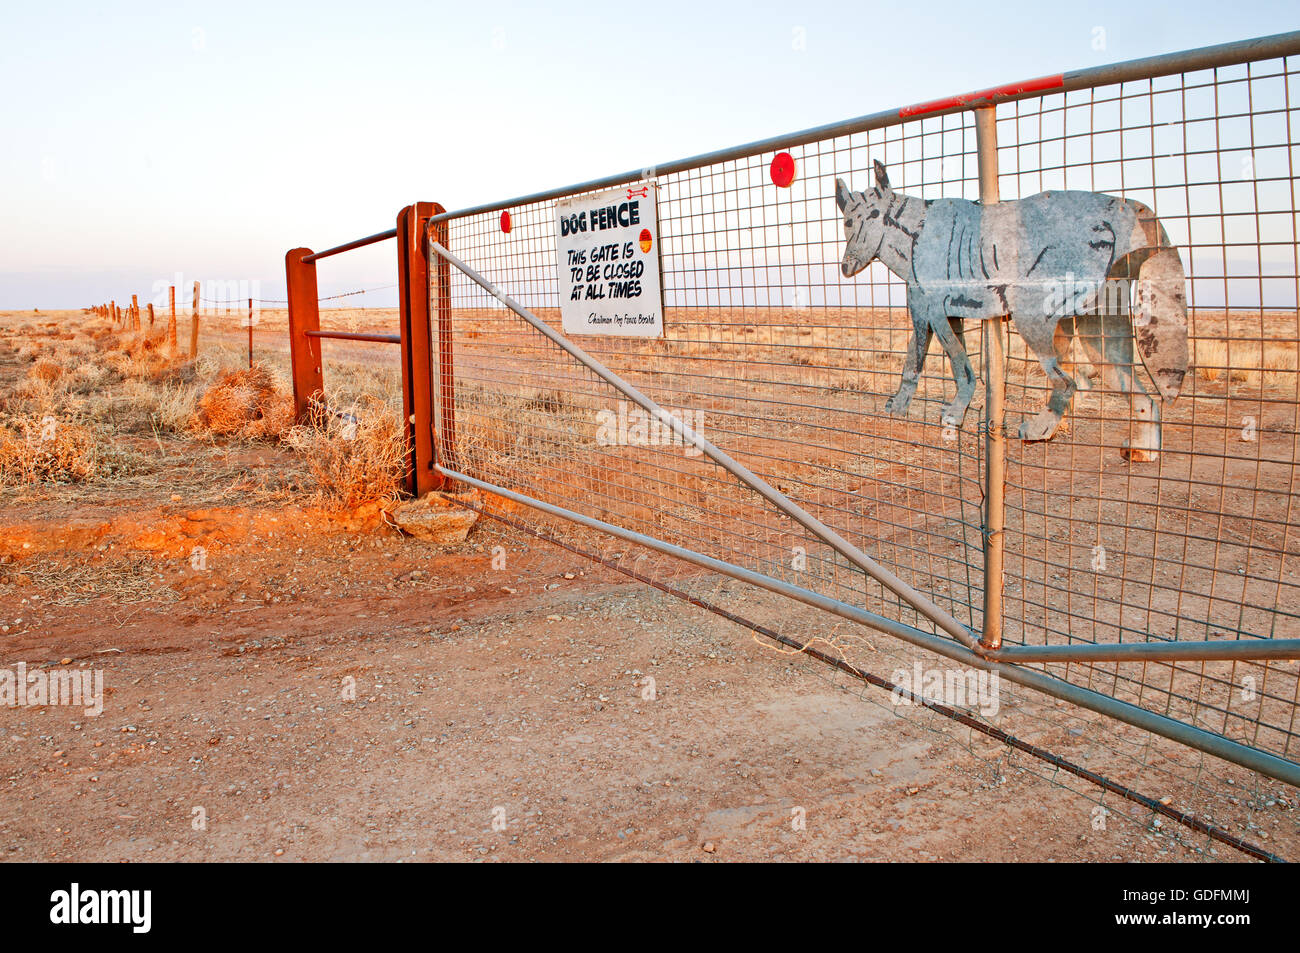 Puerta del Dingo Fence en el desierto del sur de Australia. Foto de stock